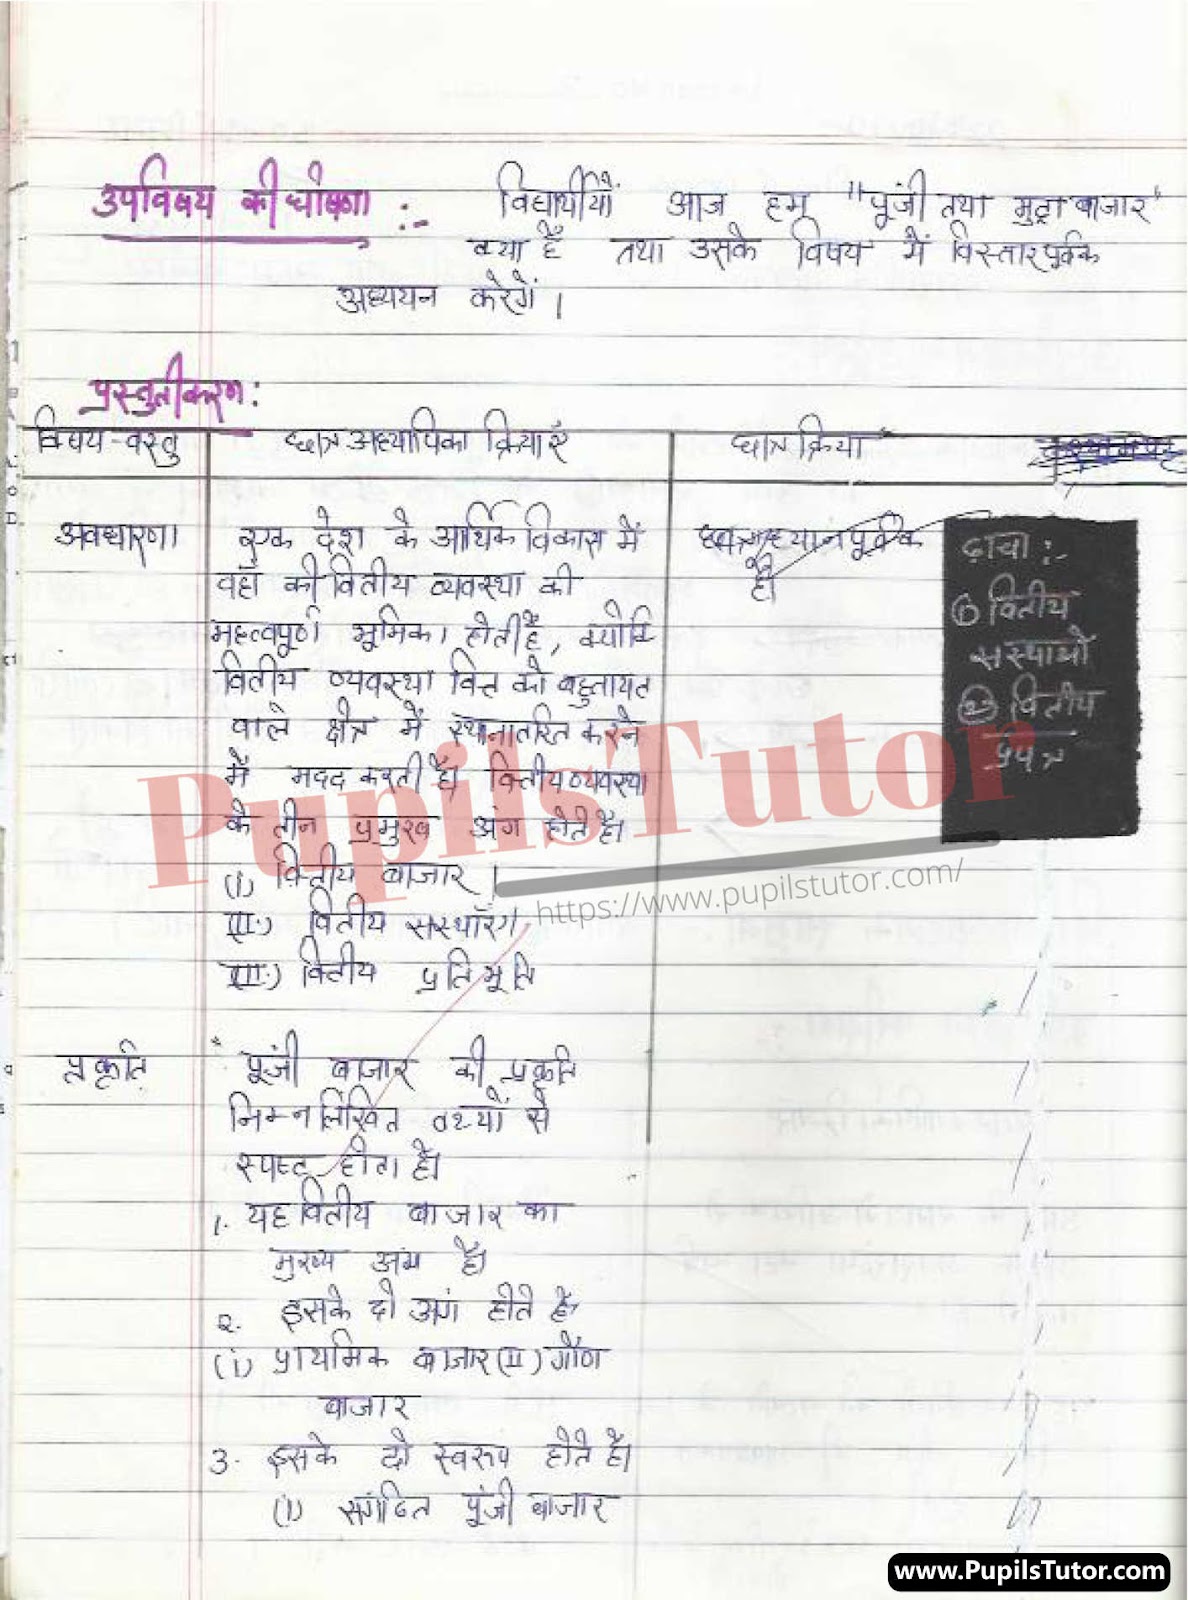 Mega Teaching  Punji Tatha Mudra Bazar Lesson Plan For B.Ed And Deled In Hindi Free Download PDF And PPT (Power Point Presentation And Slides) | बीएड और डीएलएड के लिए मेगा टीचिंग कौशल पर पूंजी तथा मुद्रा बाजार कक्षा 10 के लेसन प्लान की पीडीऍफ़ और पीपीटी फ्री में डाउनलोड करे| – (Page And PDF Number 2) – pupilstutor